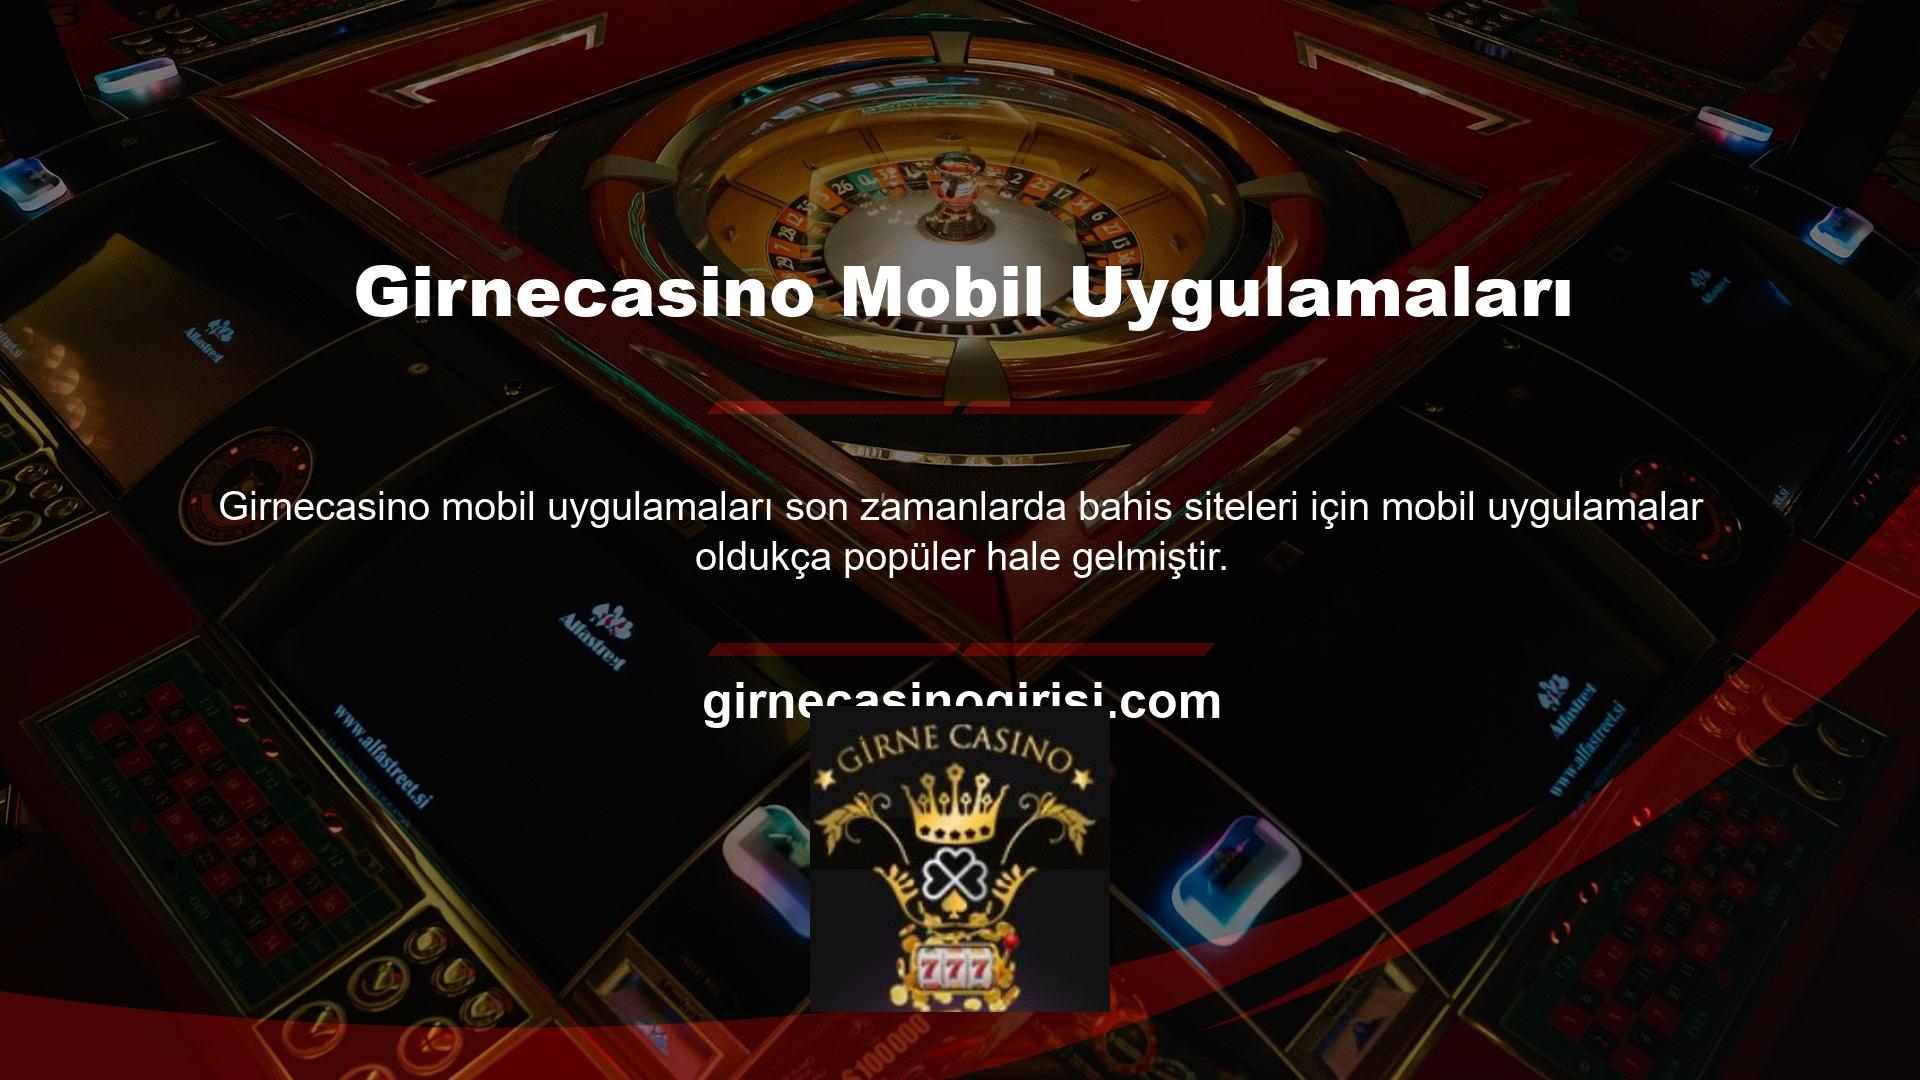 Girnecasino, güvenilir casino sitesi üyelerinin rahatlığı için bir mobil uygulama yayınladı